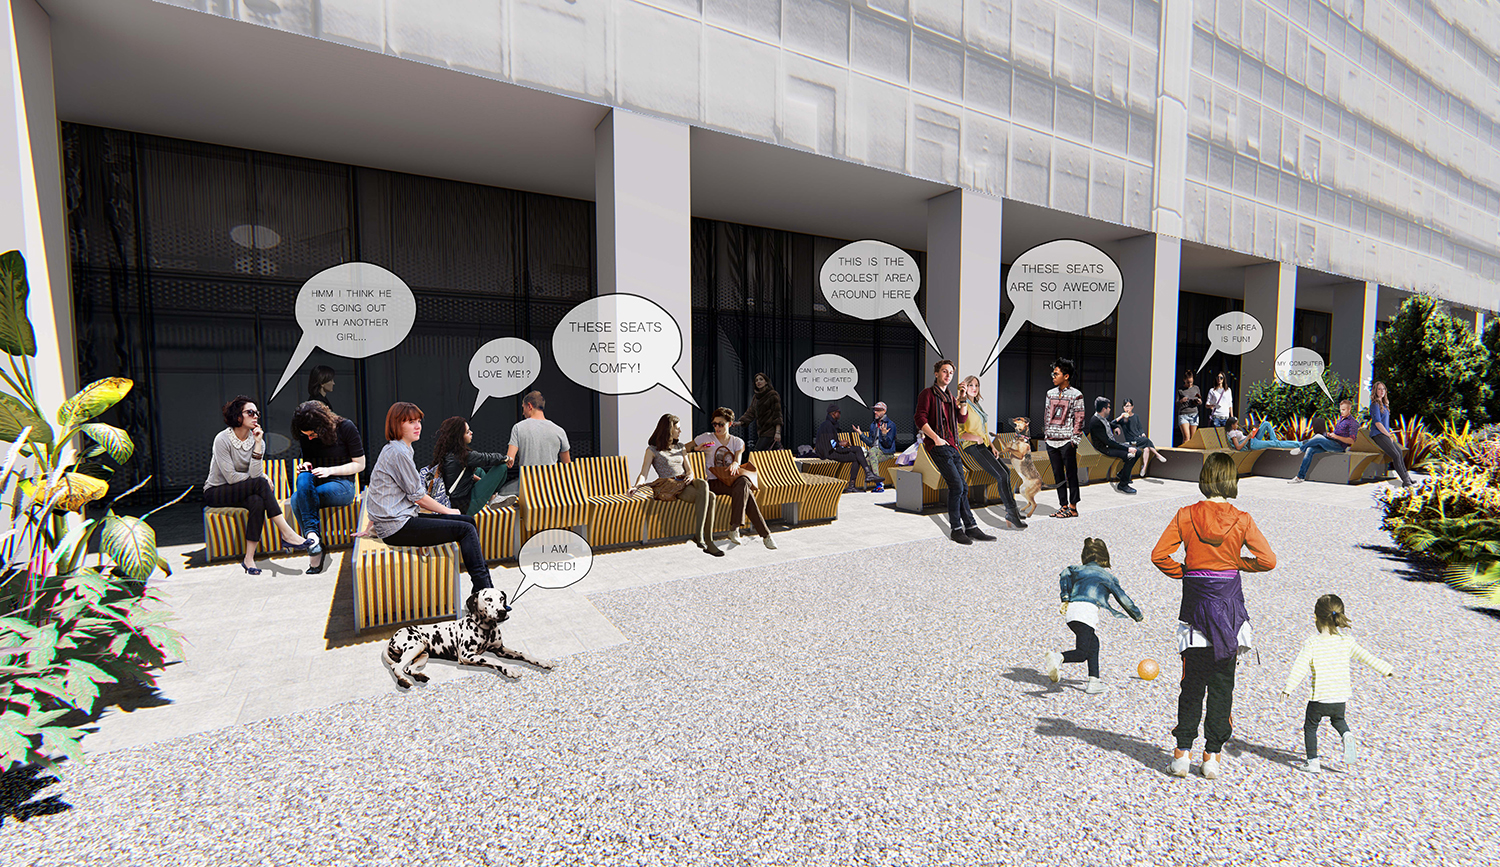 Pedram Karimi's campus bench proposal rendering